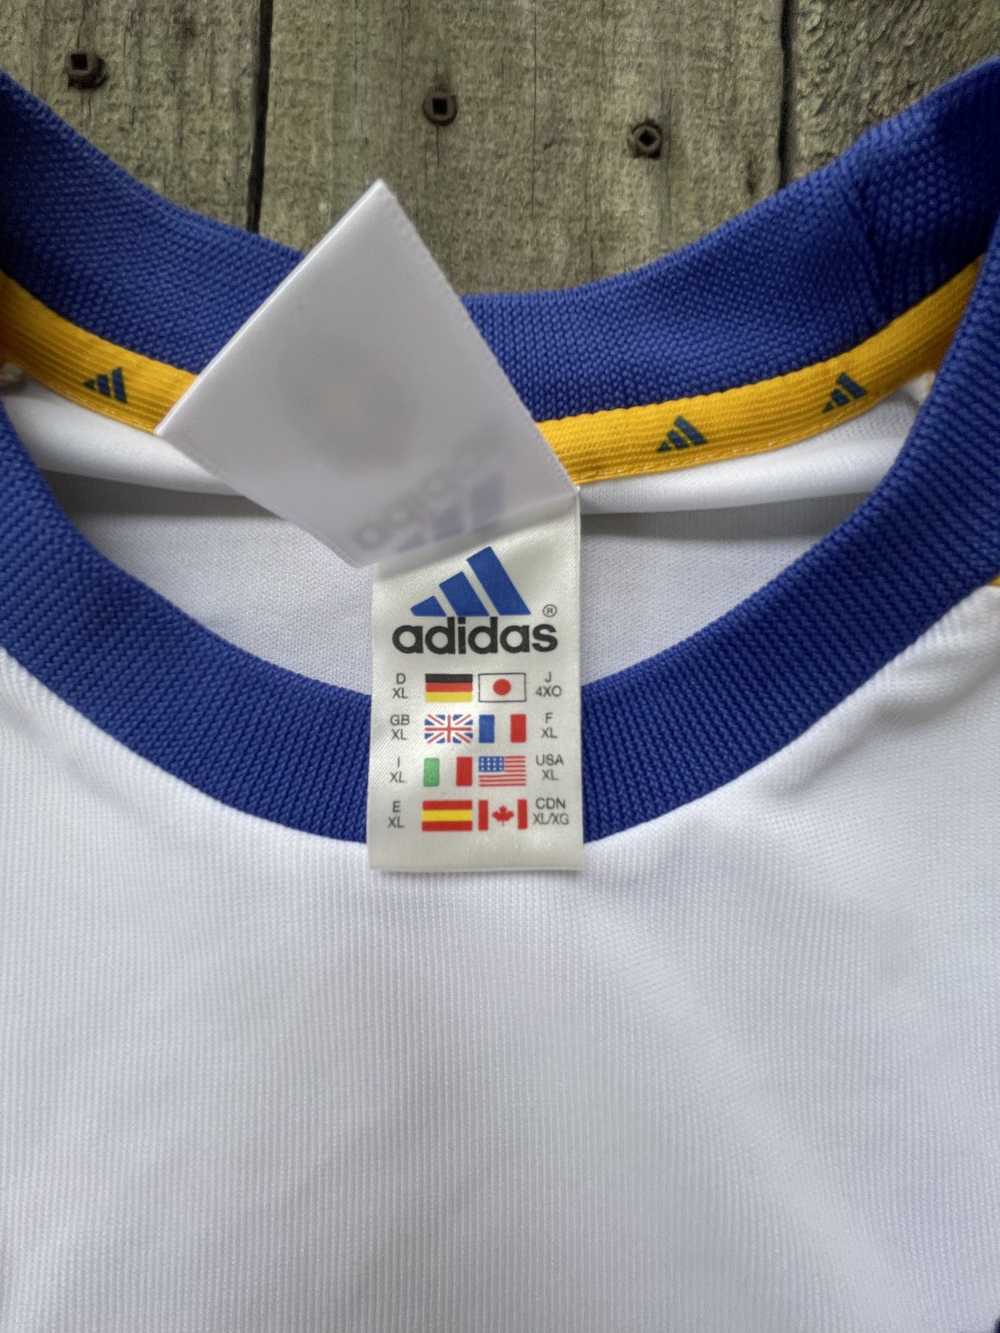 Adidas Vintage Sweden Soccer Jersey - image 4